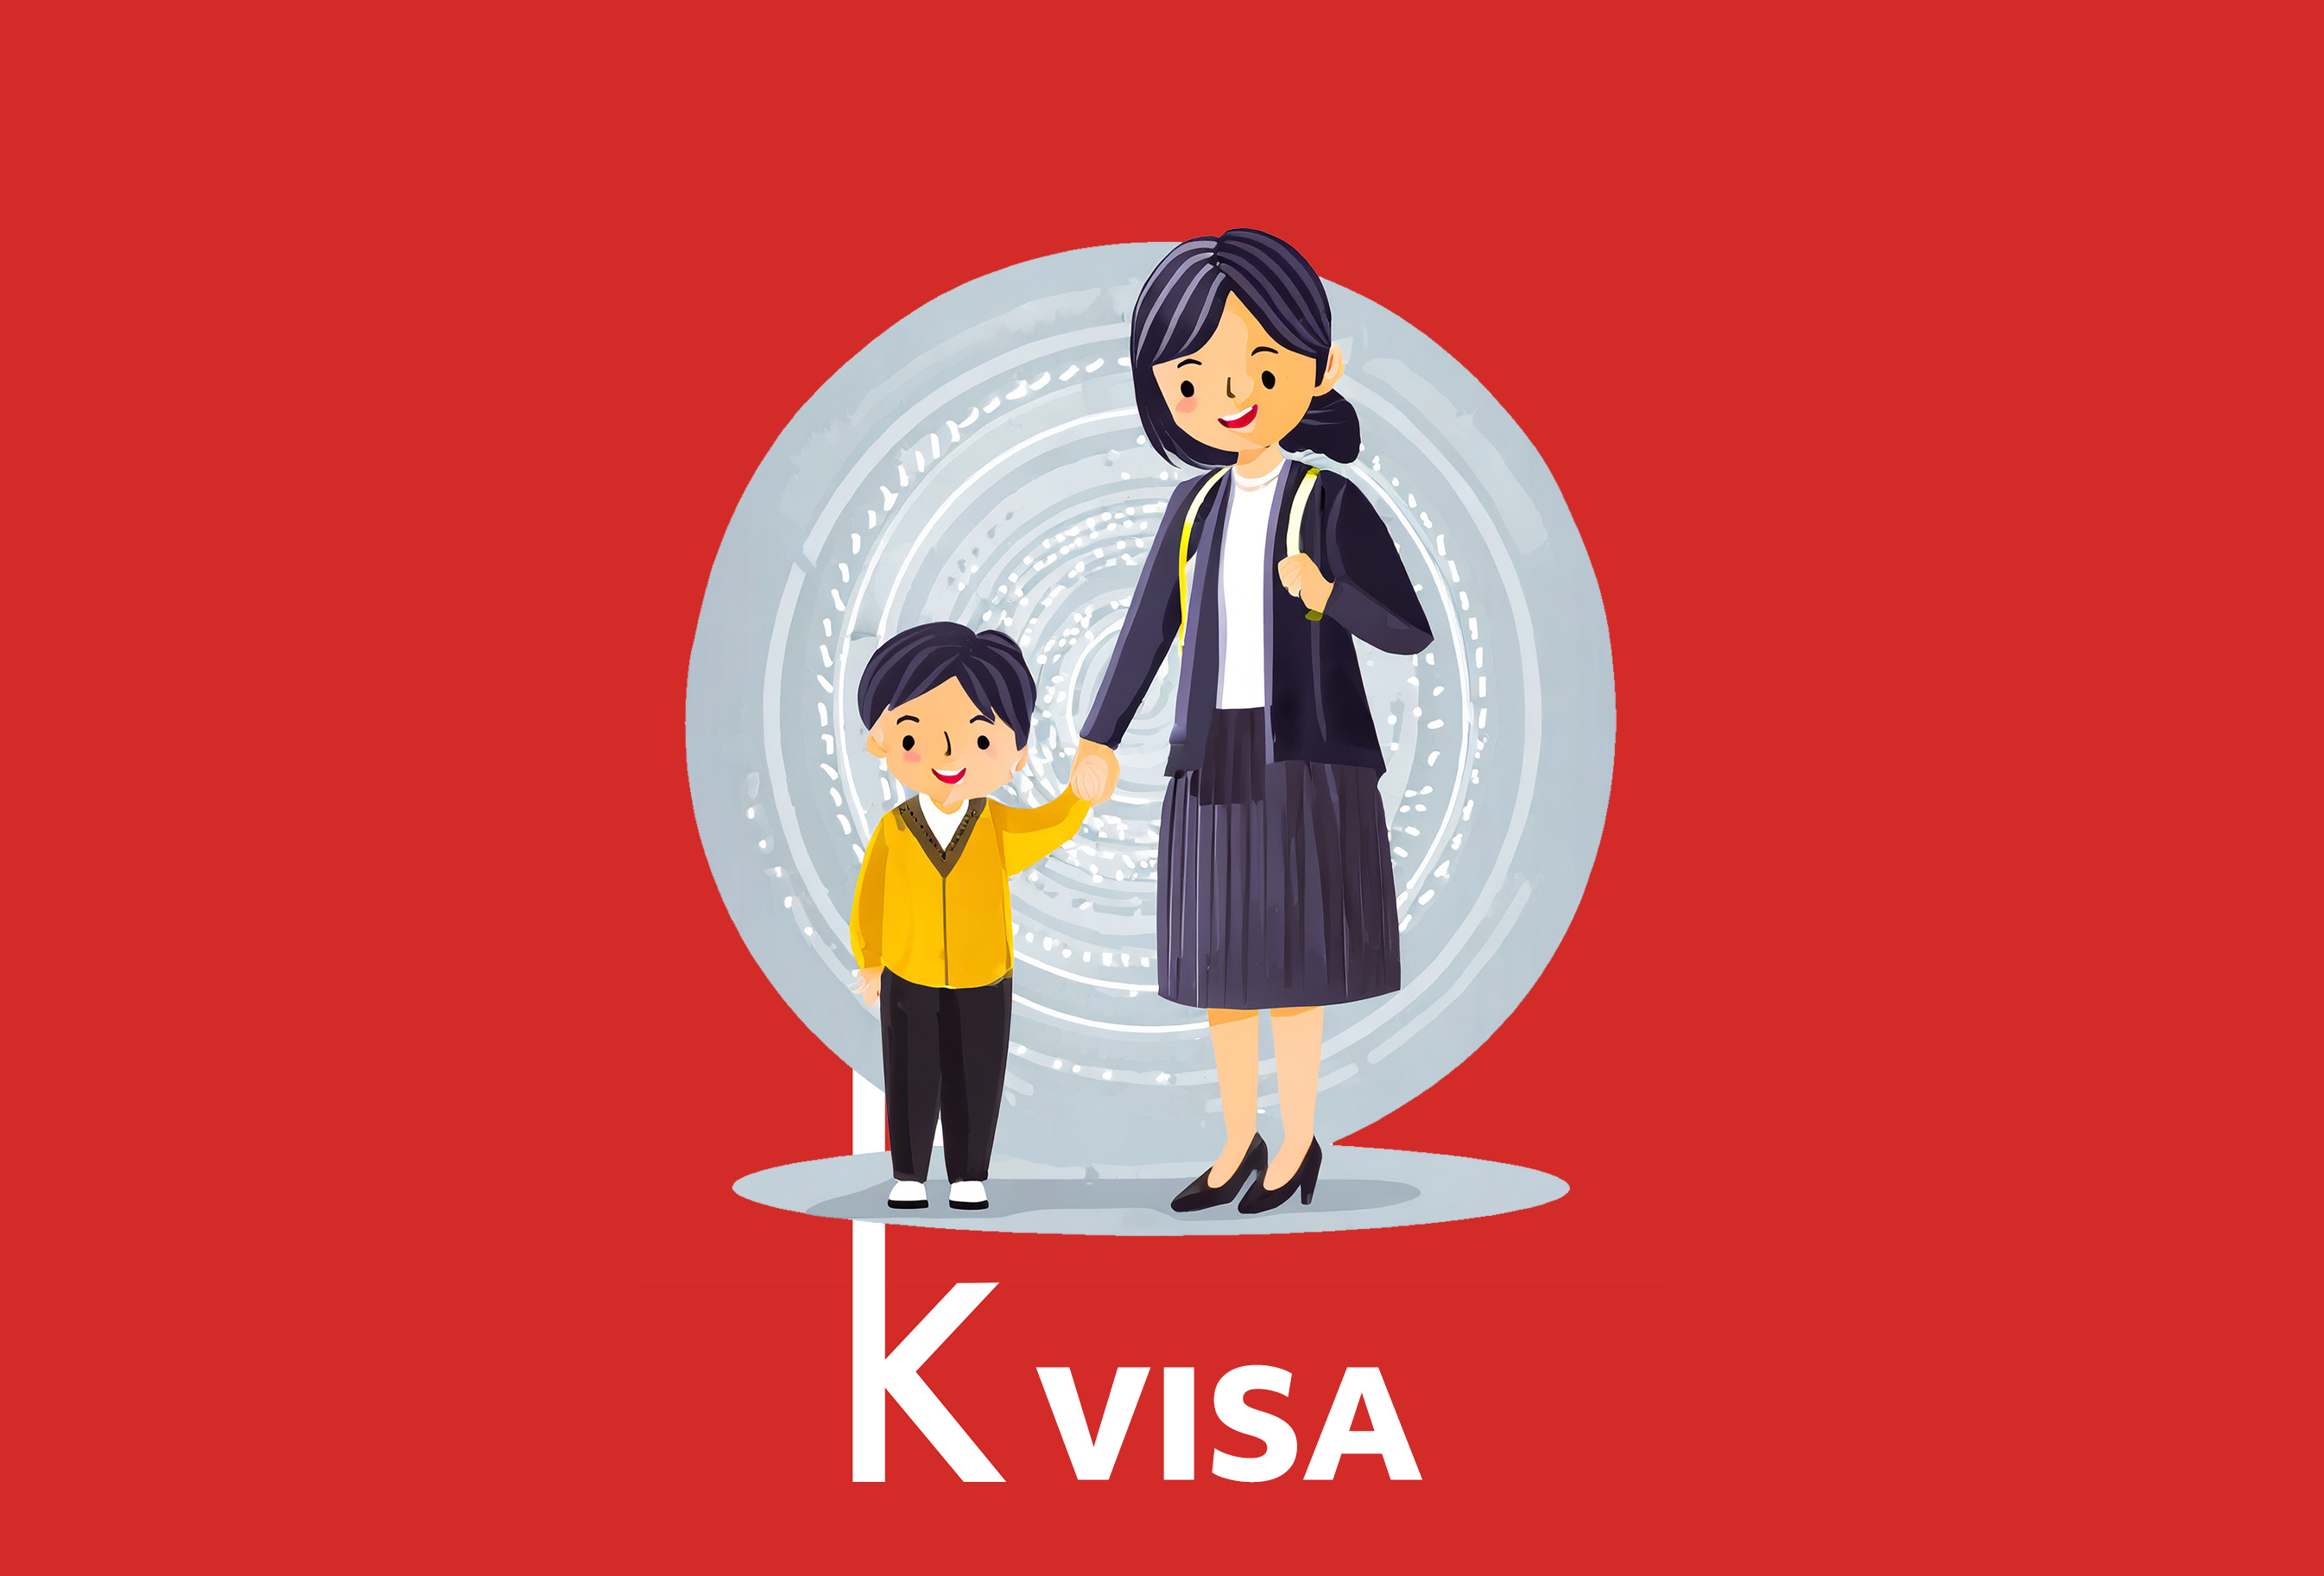 F3 Visa profile.jpg